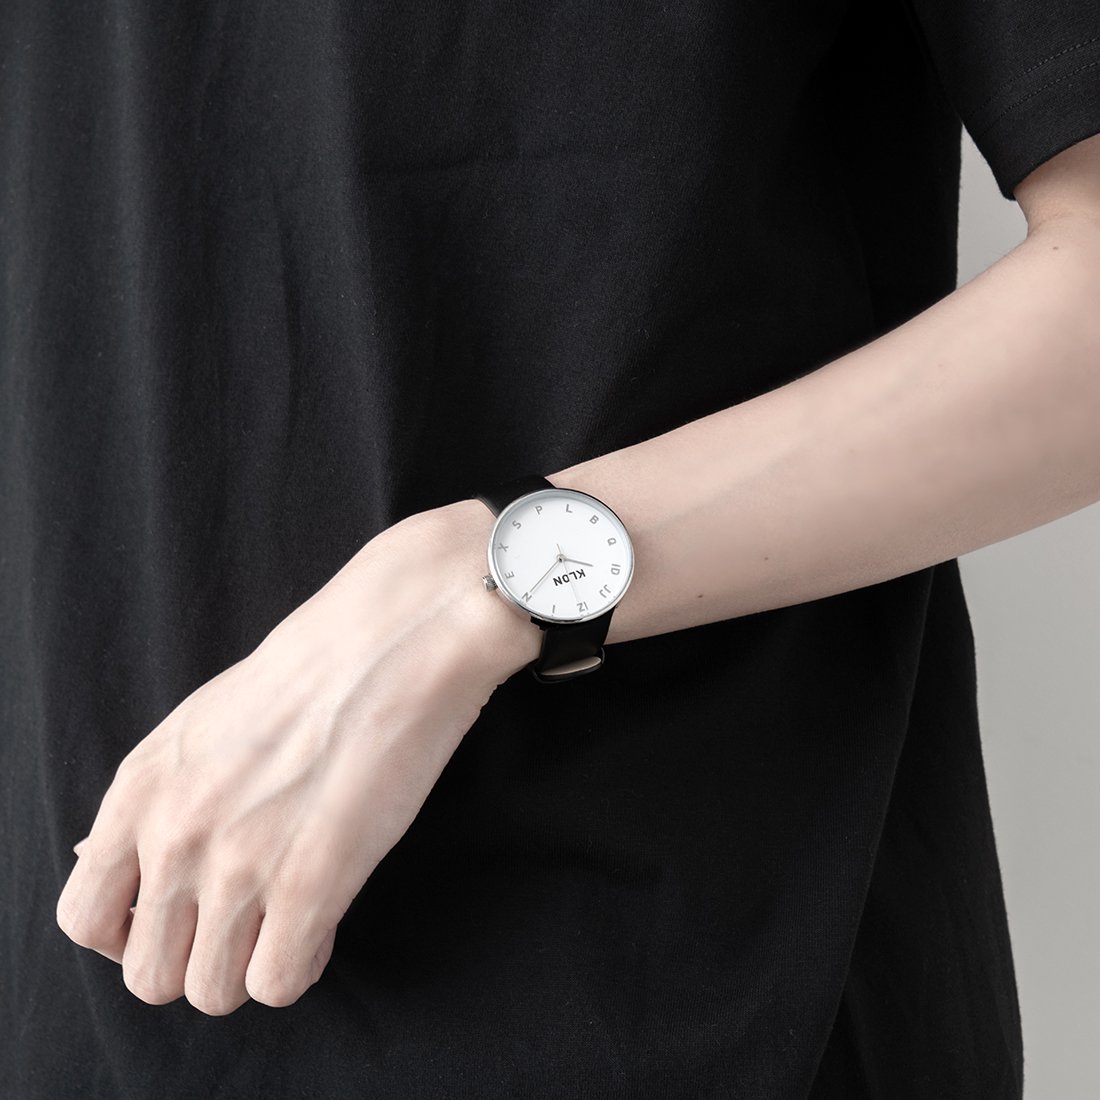 【組合せ商品】KLON MOCK NUMBER BLACK Ver.SILVER (33mm×40mm) カジュアル 腕時計